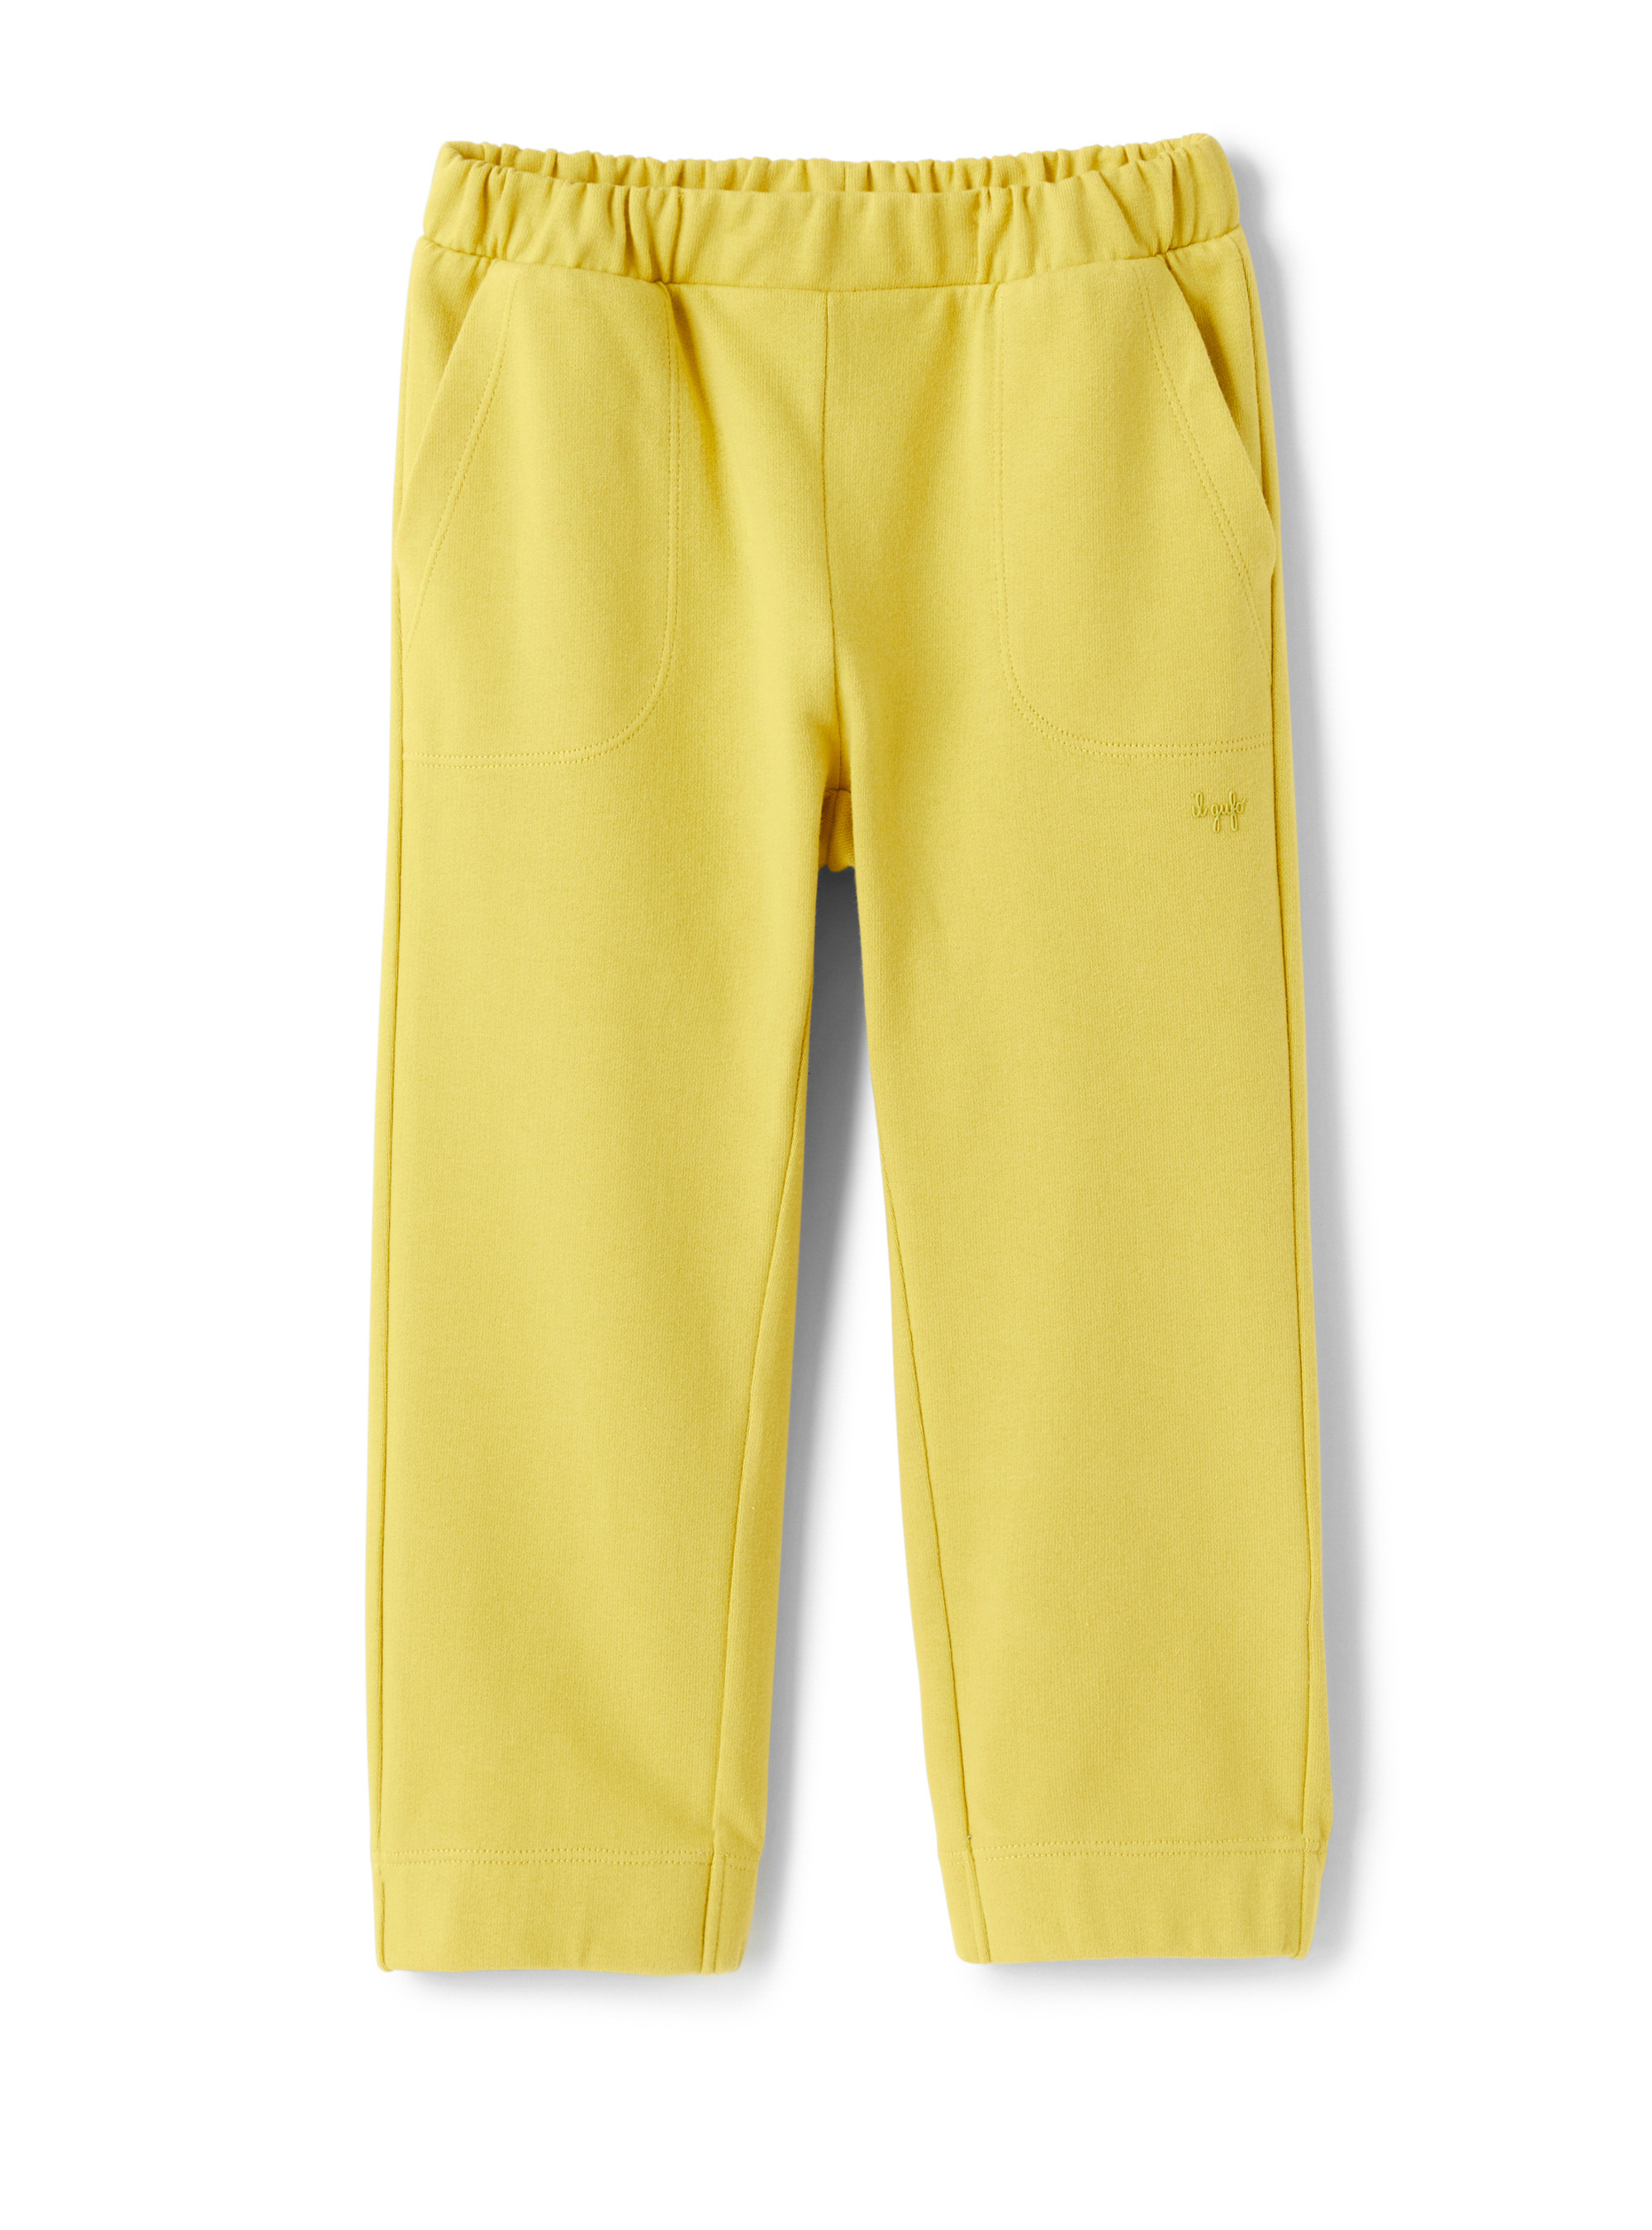 Pantalon en molleton jaune mimosa - Pantalons - Il Gufo